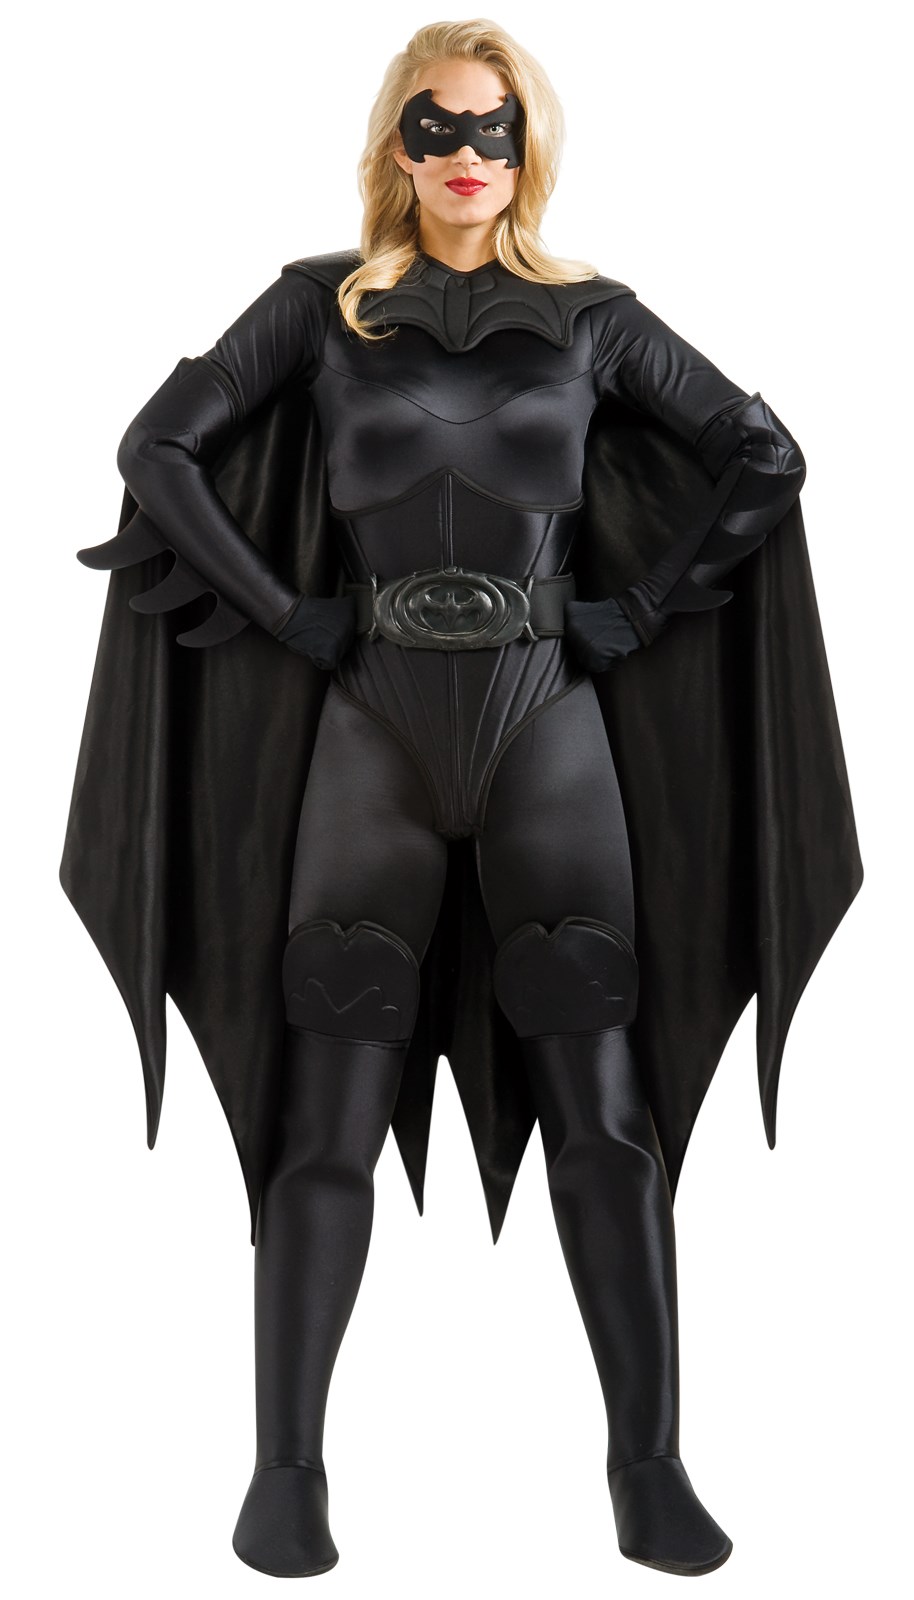 Collectors Batgirl Adult